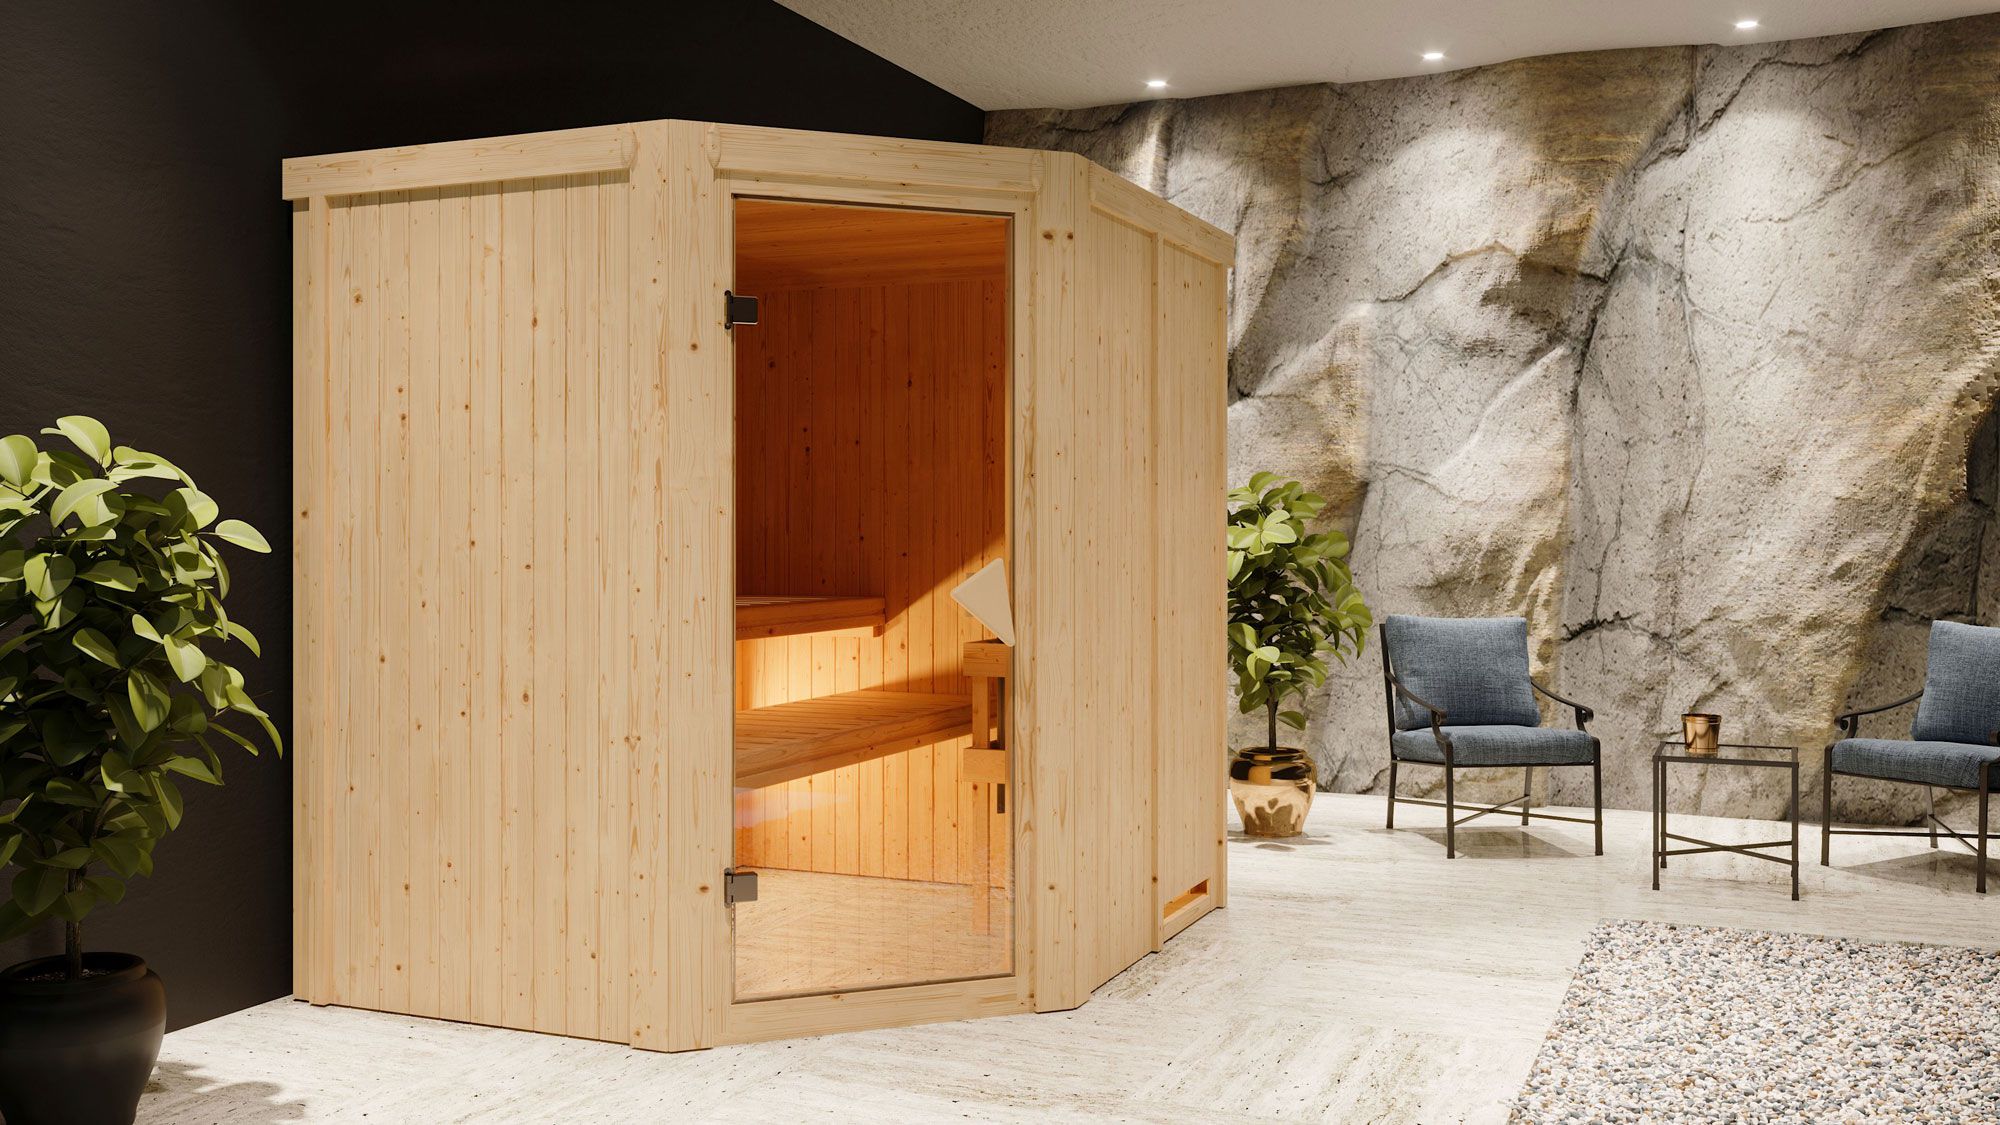 Sauna "Hanko" SET met bronskleurige deur & kachel BIO 9 kW roestvrij staal - 196 x 170 x 198 cm (B x D x H)